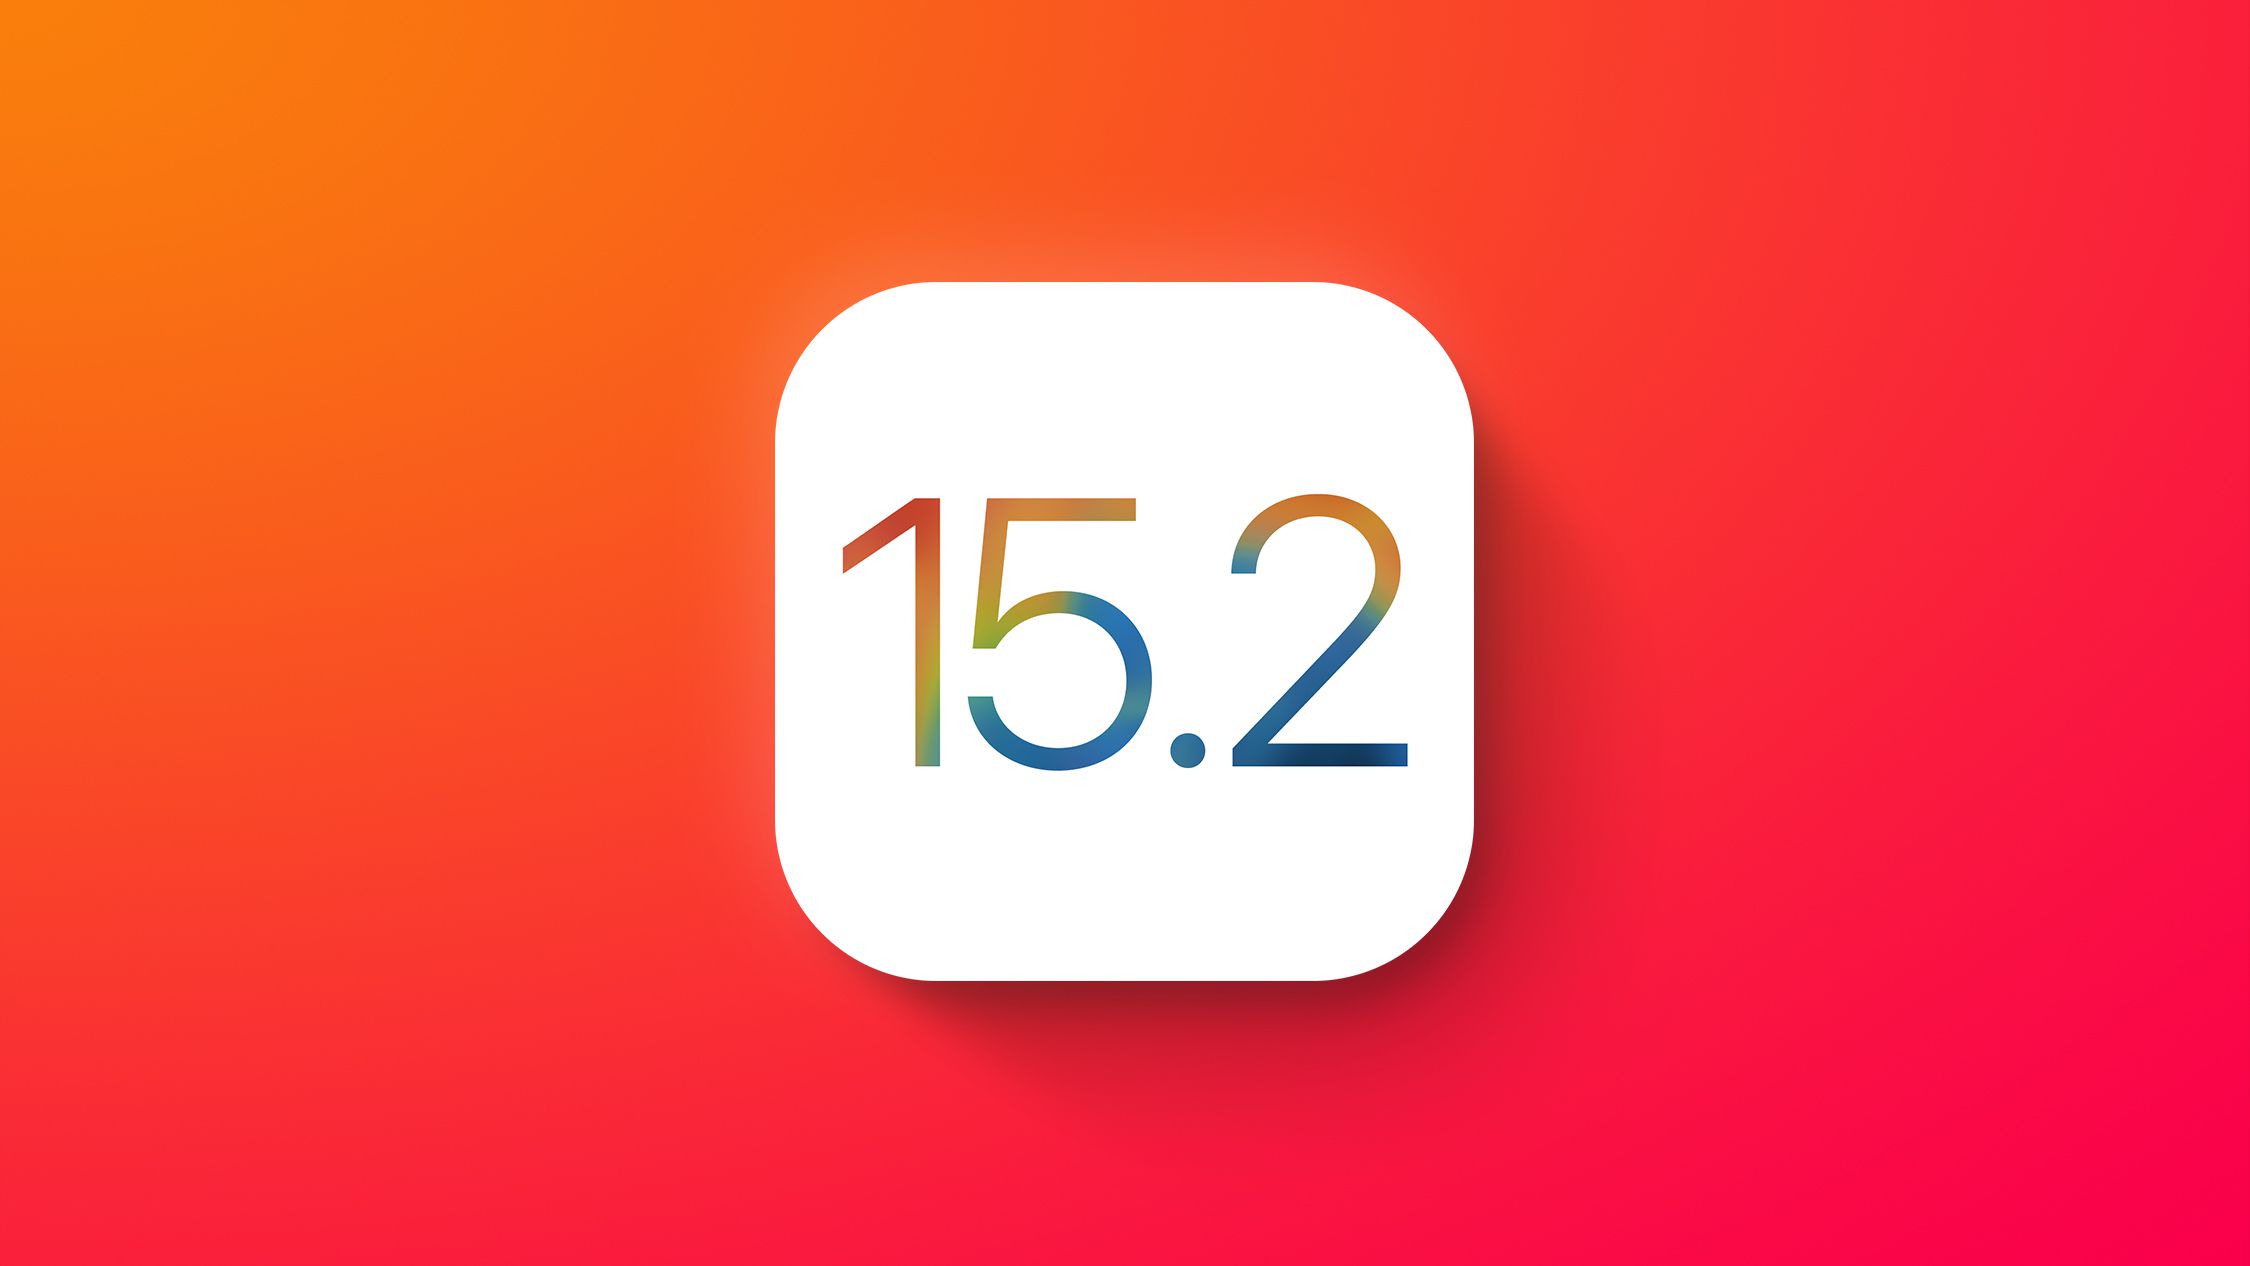 Αυτές είναι οι νέες λειτουργίες που έρχονται με το iOS 15.2 της Apple